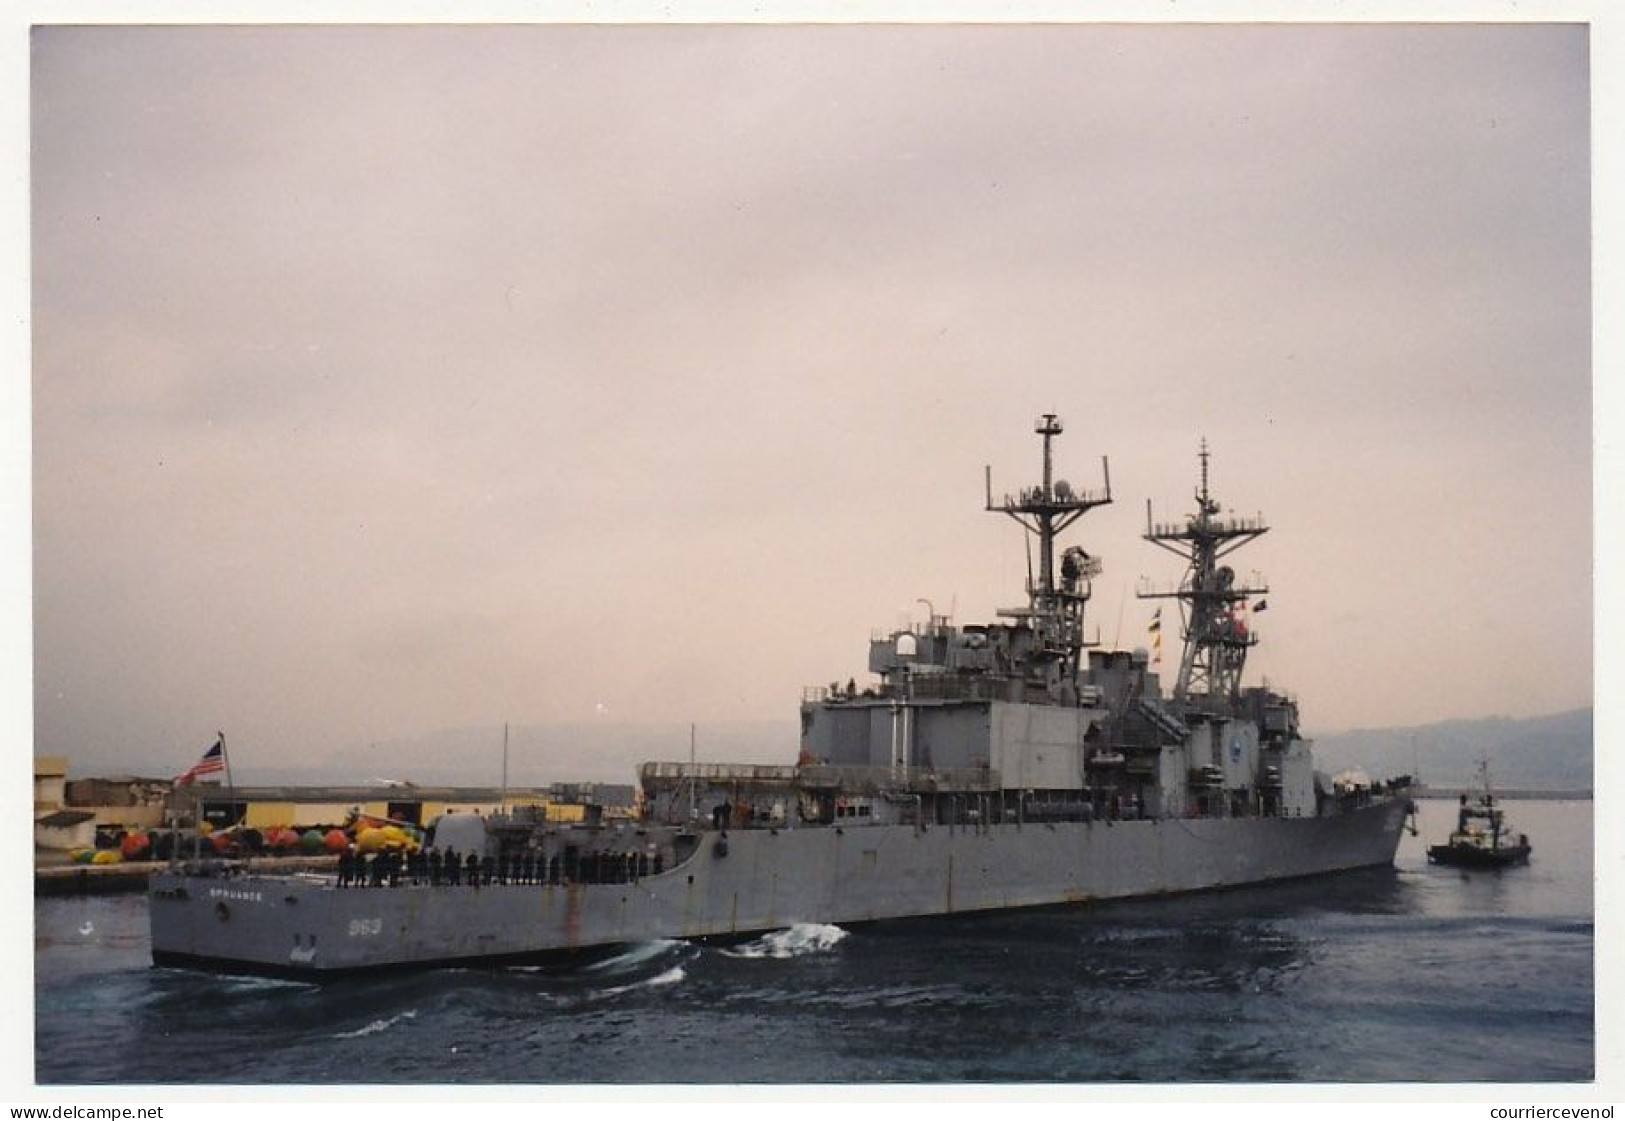 2 Photos Couleur Format Env. 10cm X 15cm - Destroyer USS Spruance (DD-963) - Octobre 1999 - Bateaux